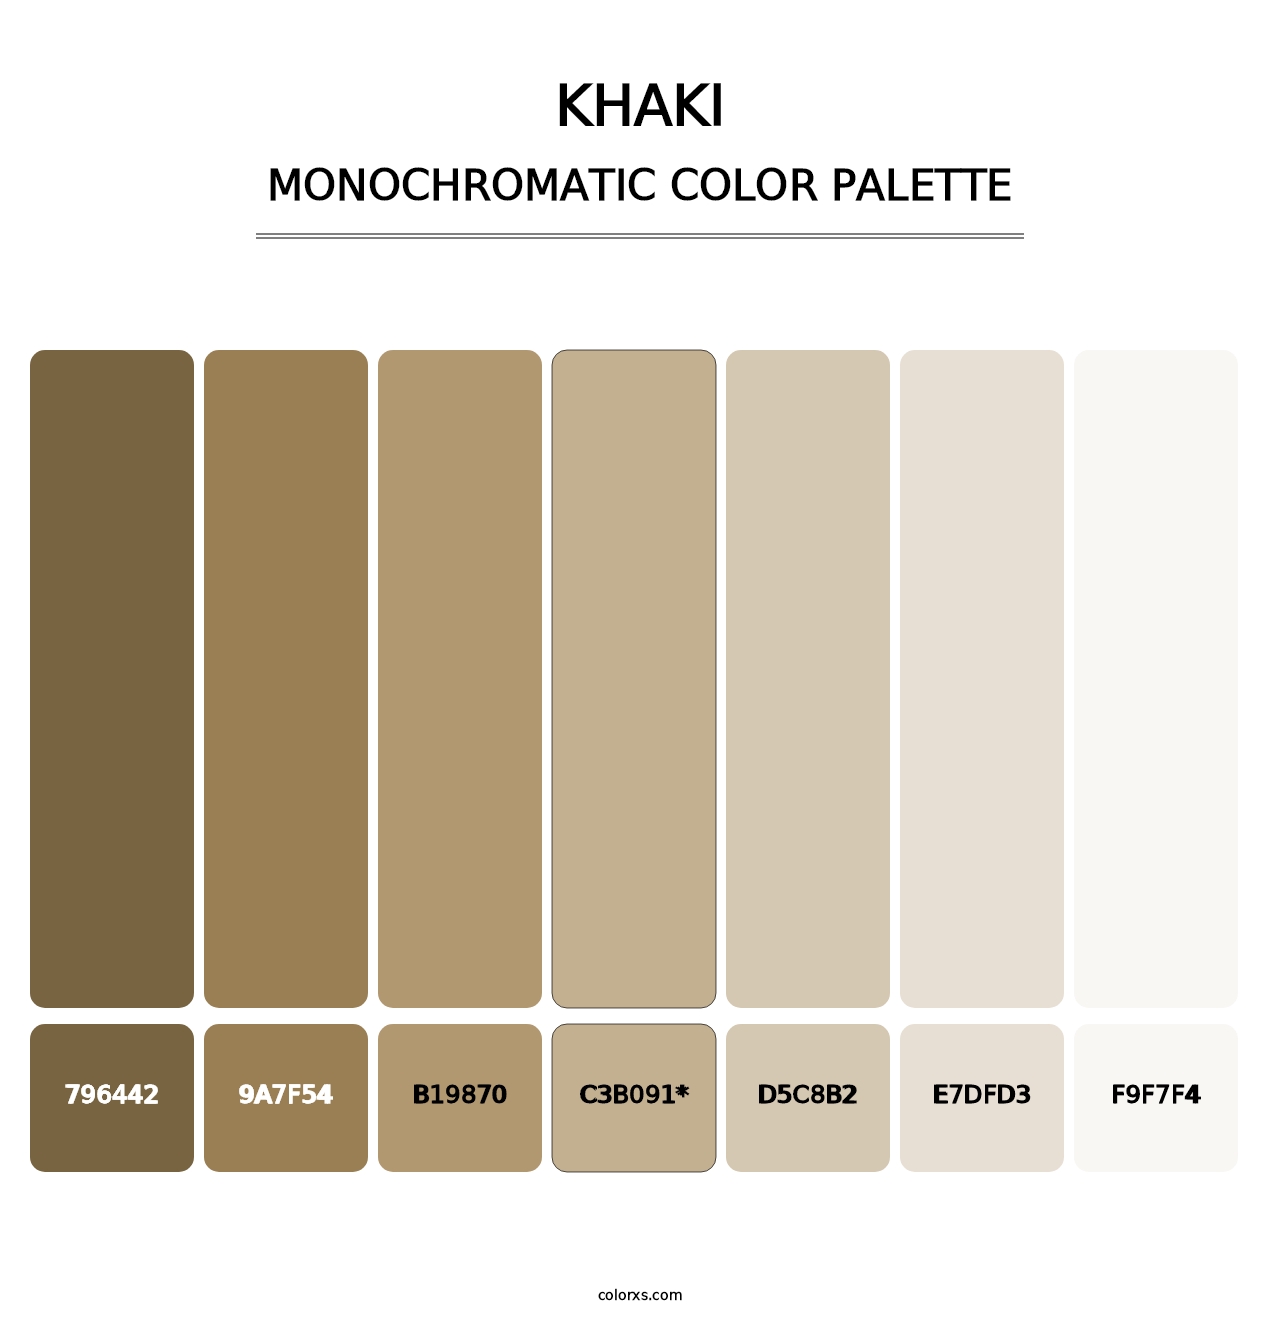 Khaki - Monochromatic Color Palette